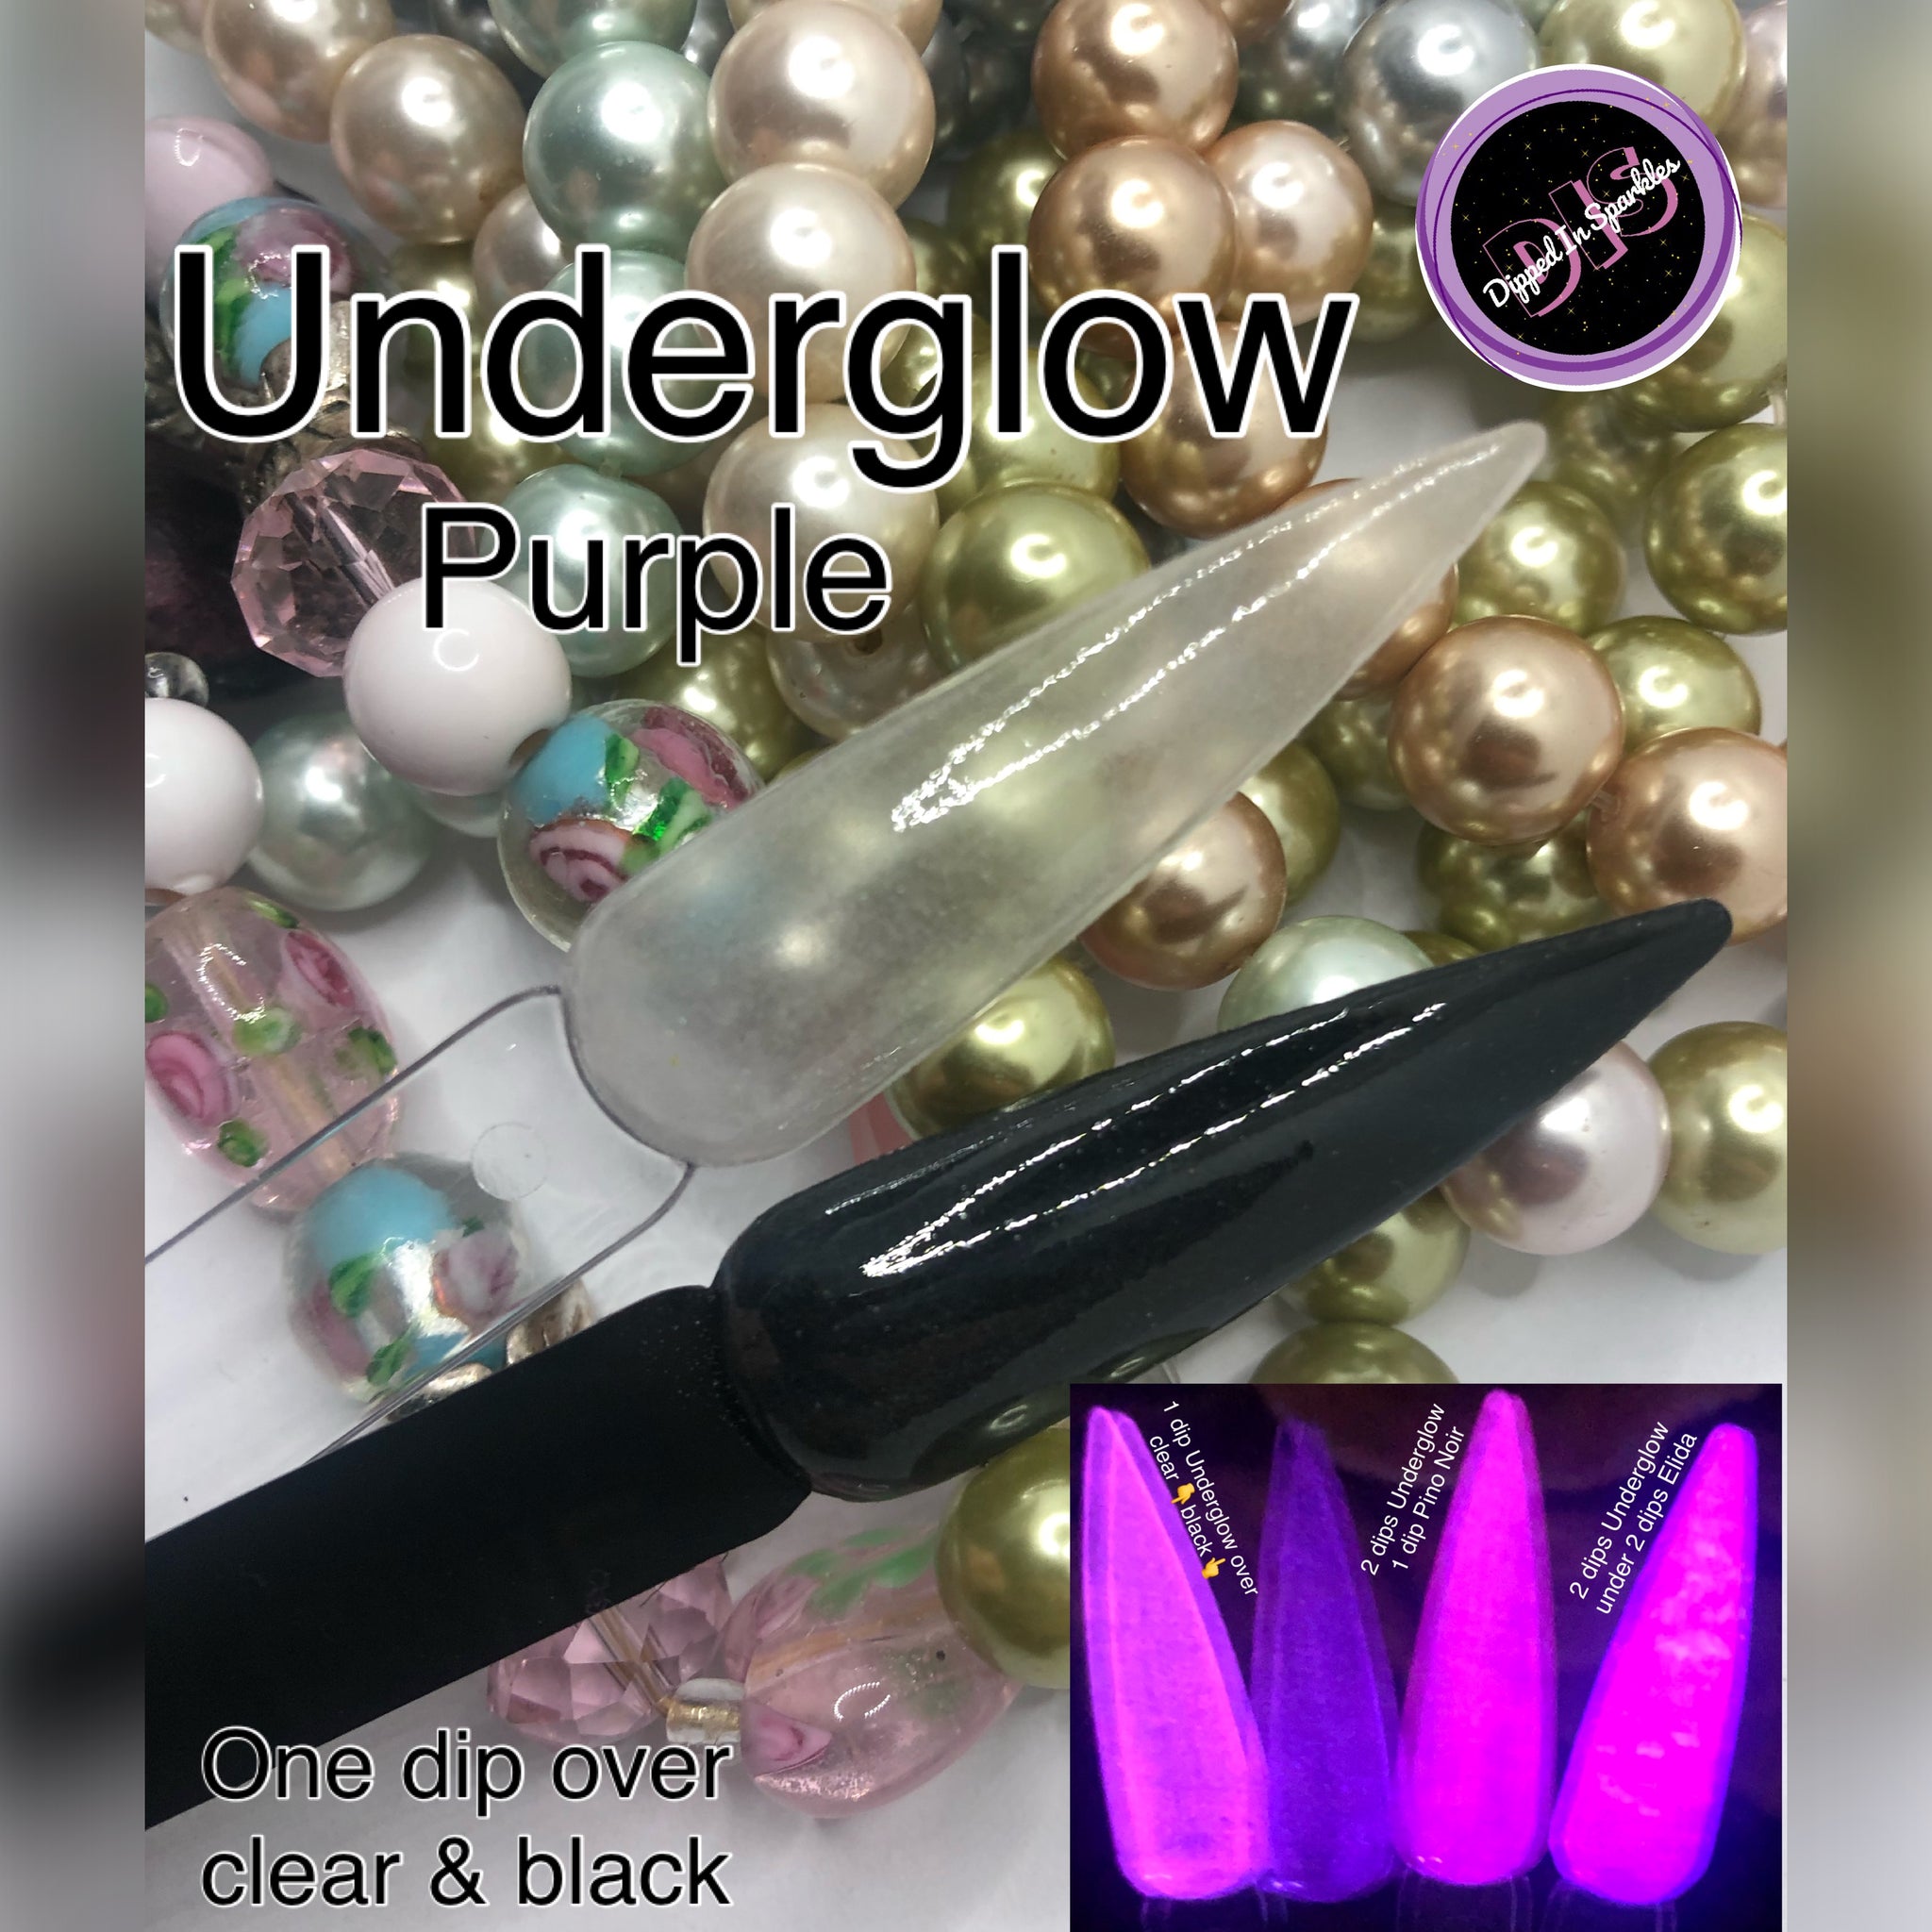 Underglow Purple